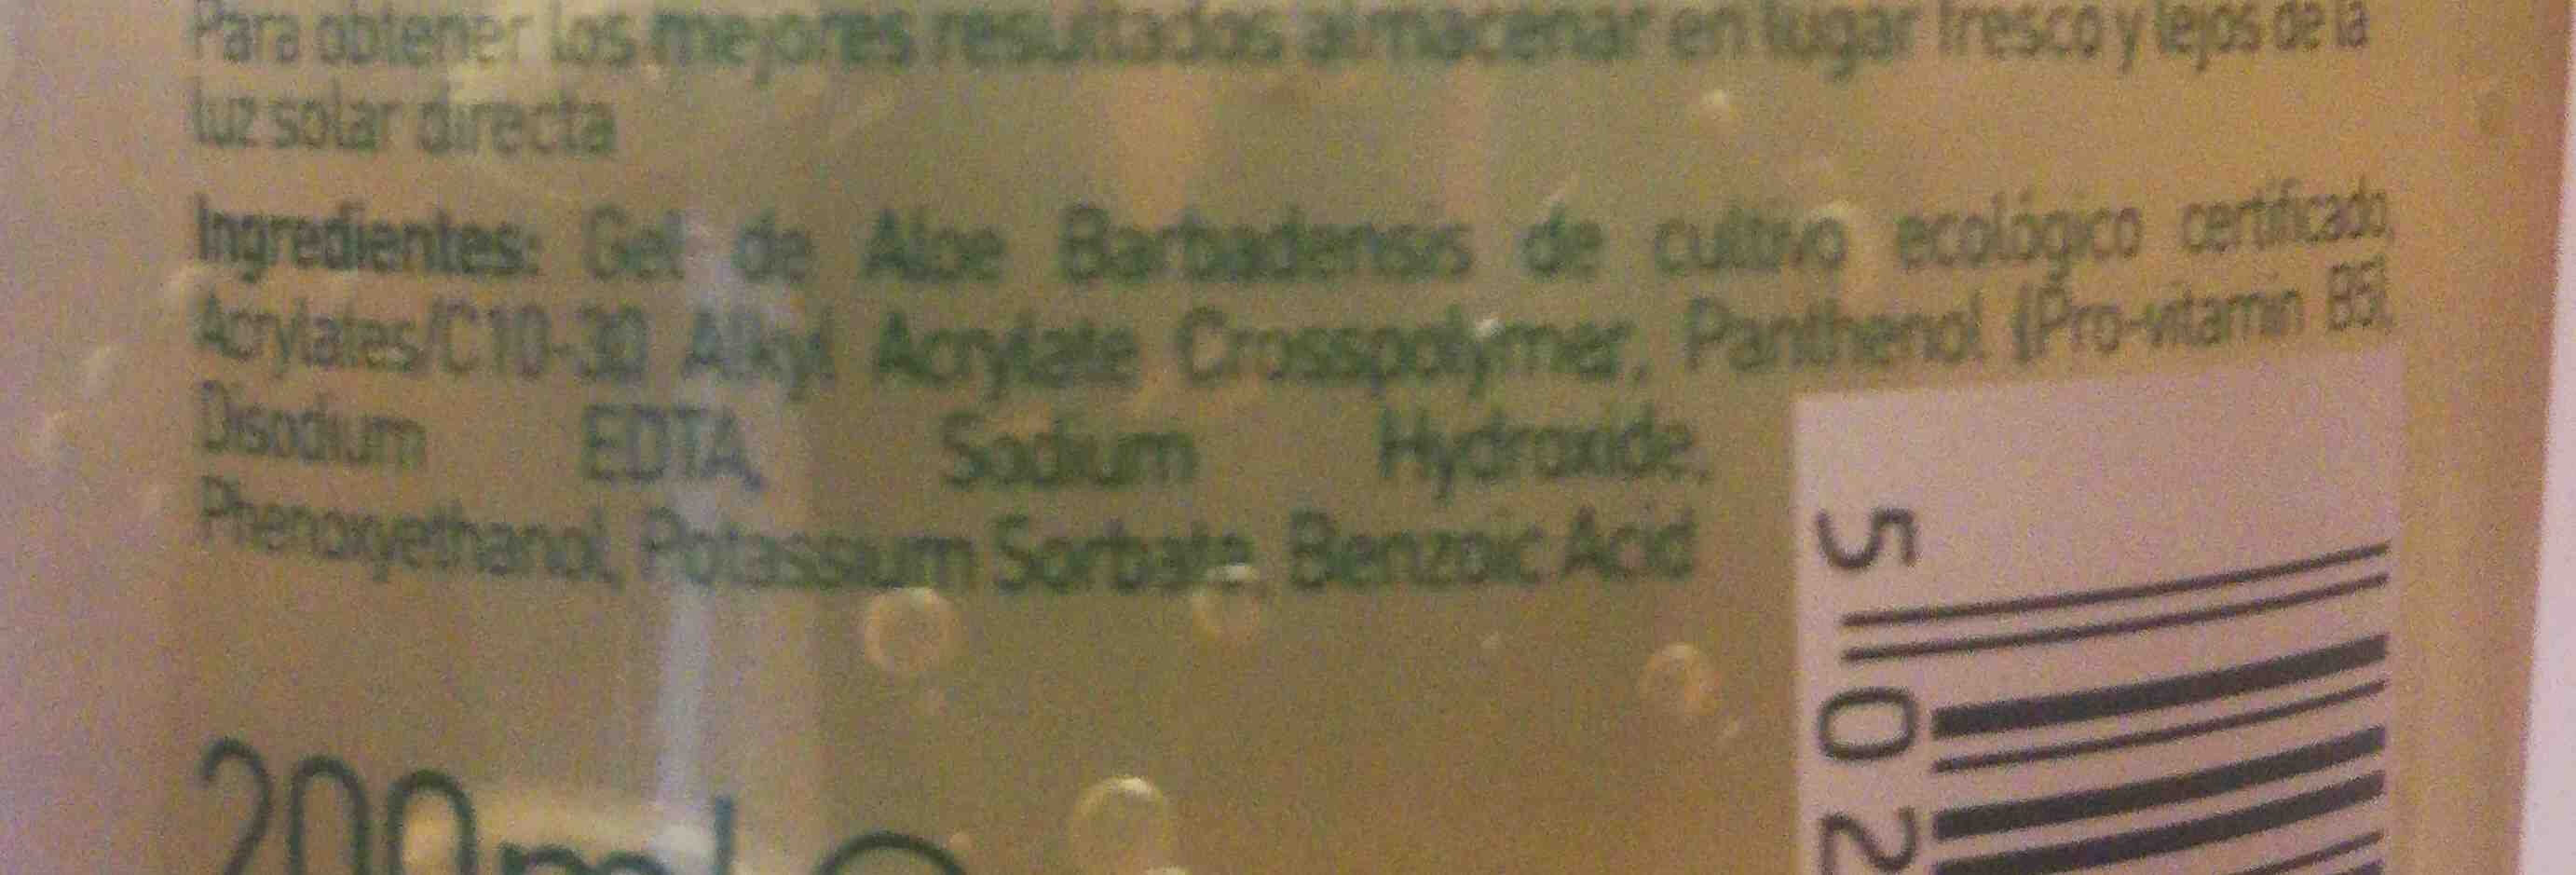 Aloe Pura Gel - Ingredients - en